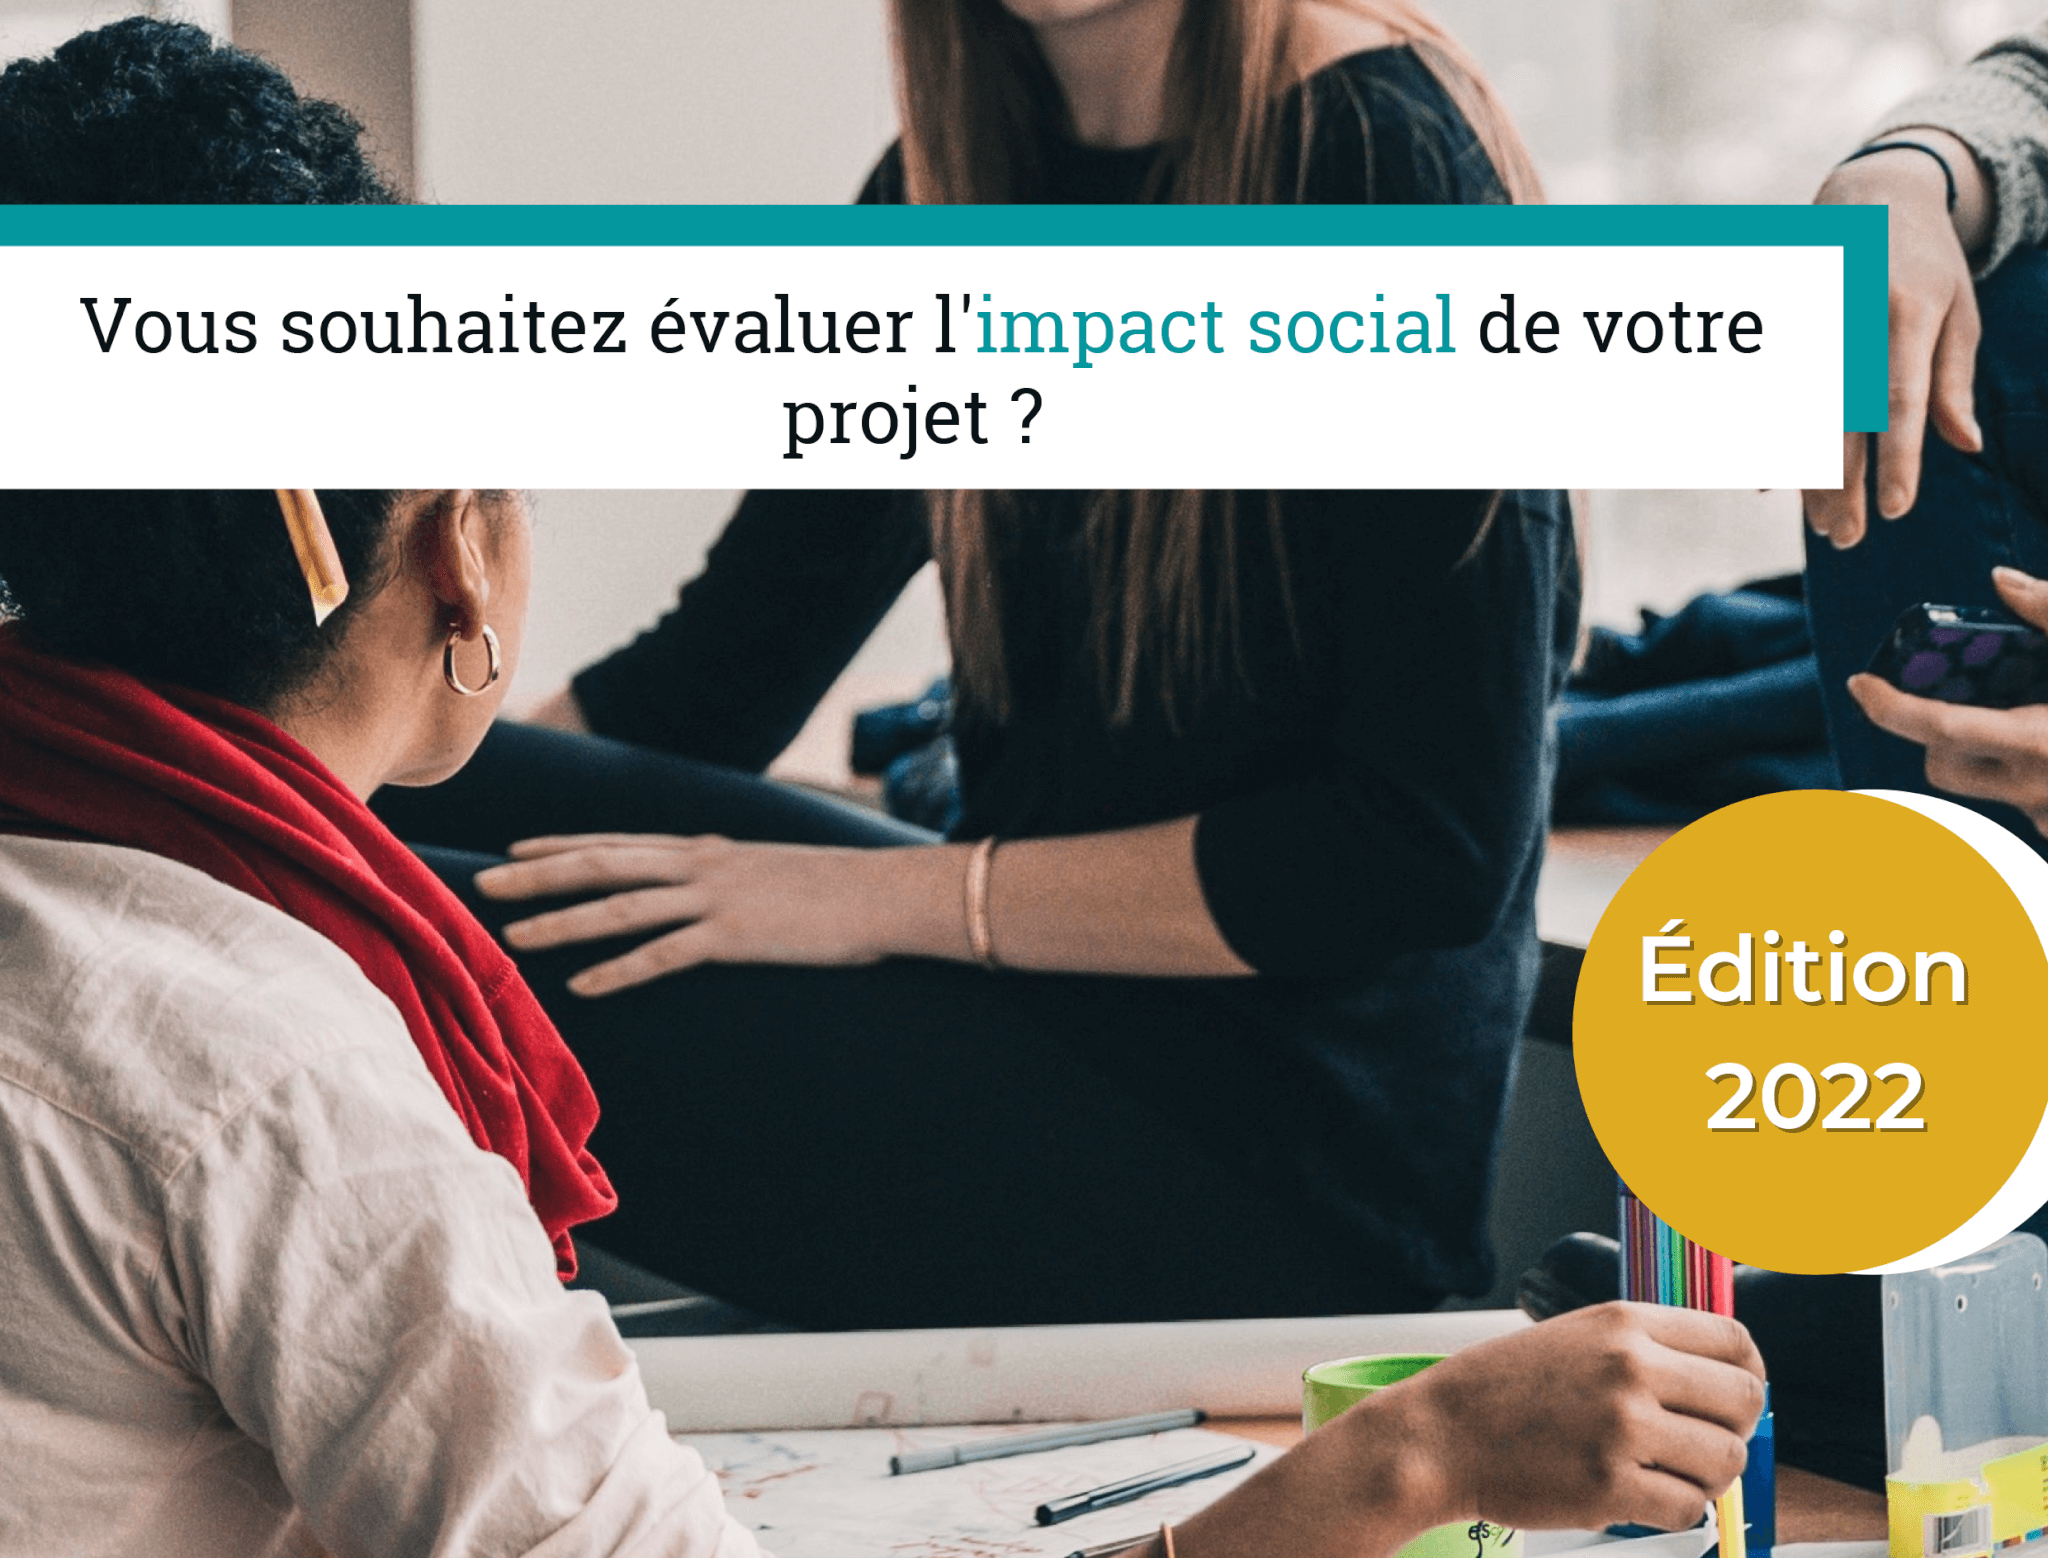 VISES : Vous souhaitez évaluer l’impact social de votre projet ?